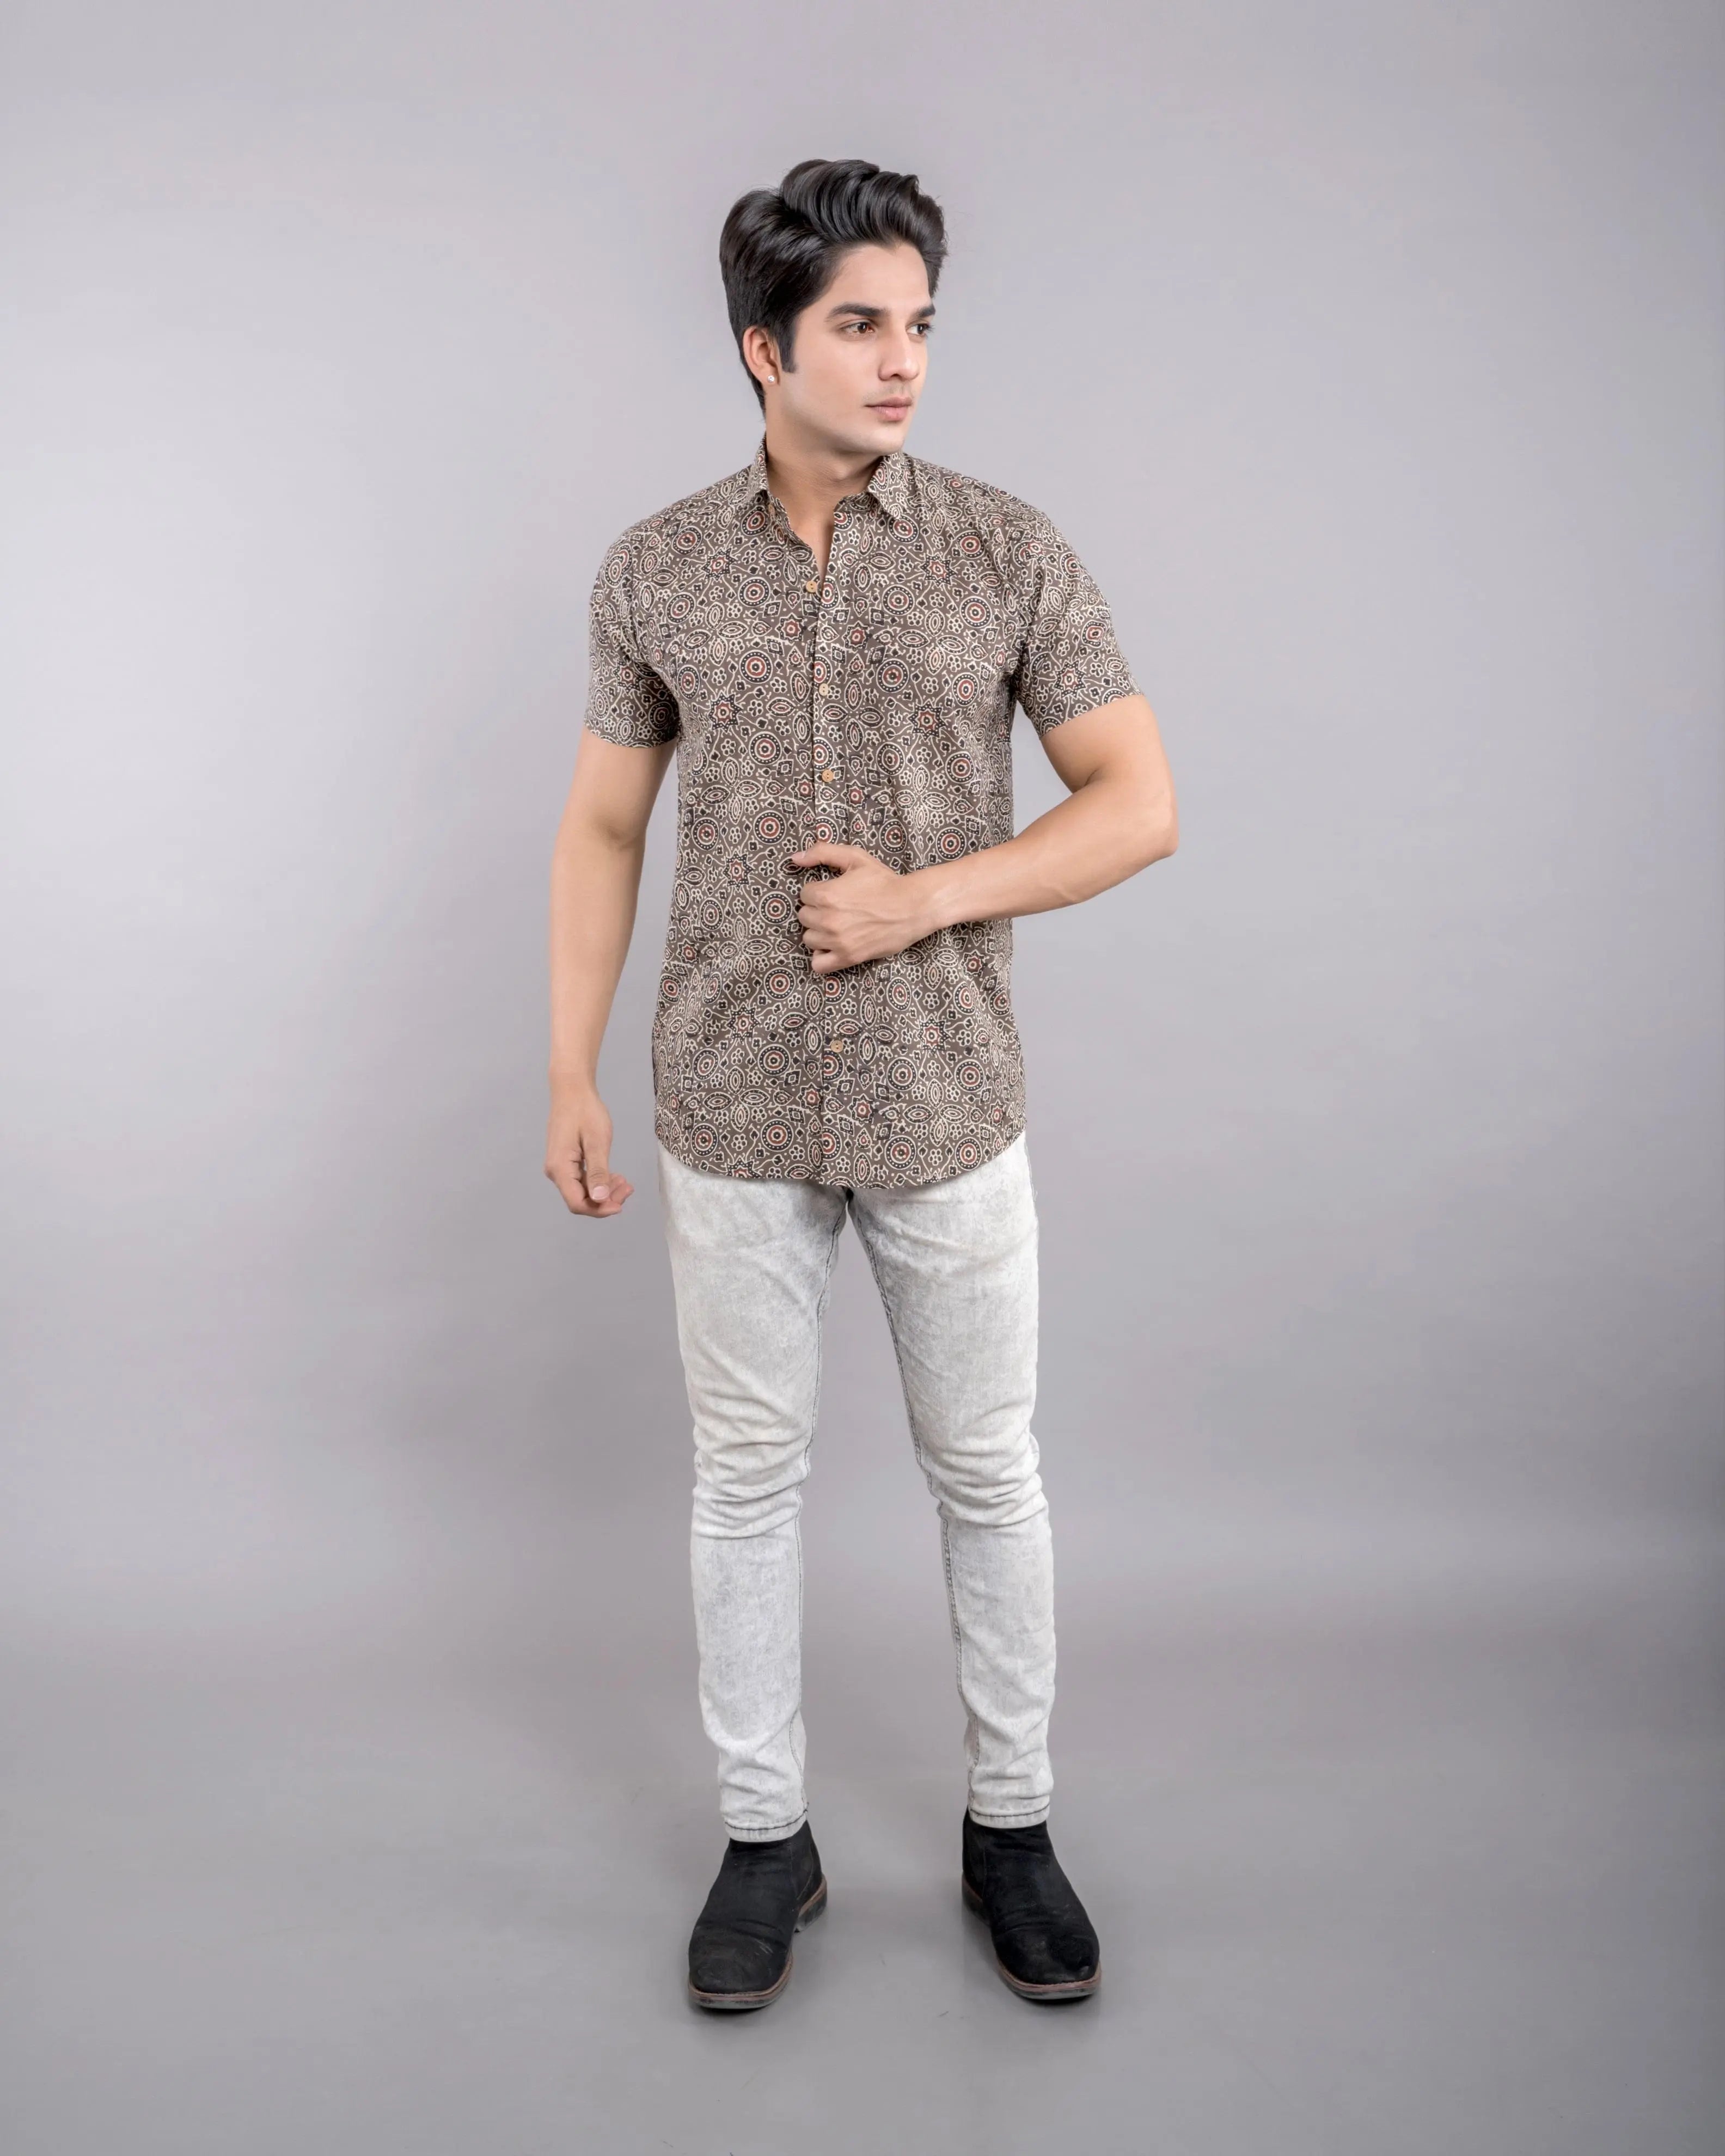 Firangi Yarn Ajrakh Printed 100% Cotton Shirt For Men -Brown